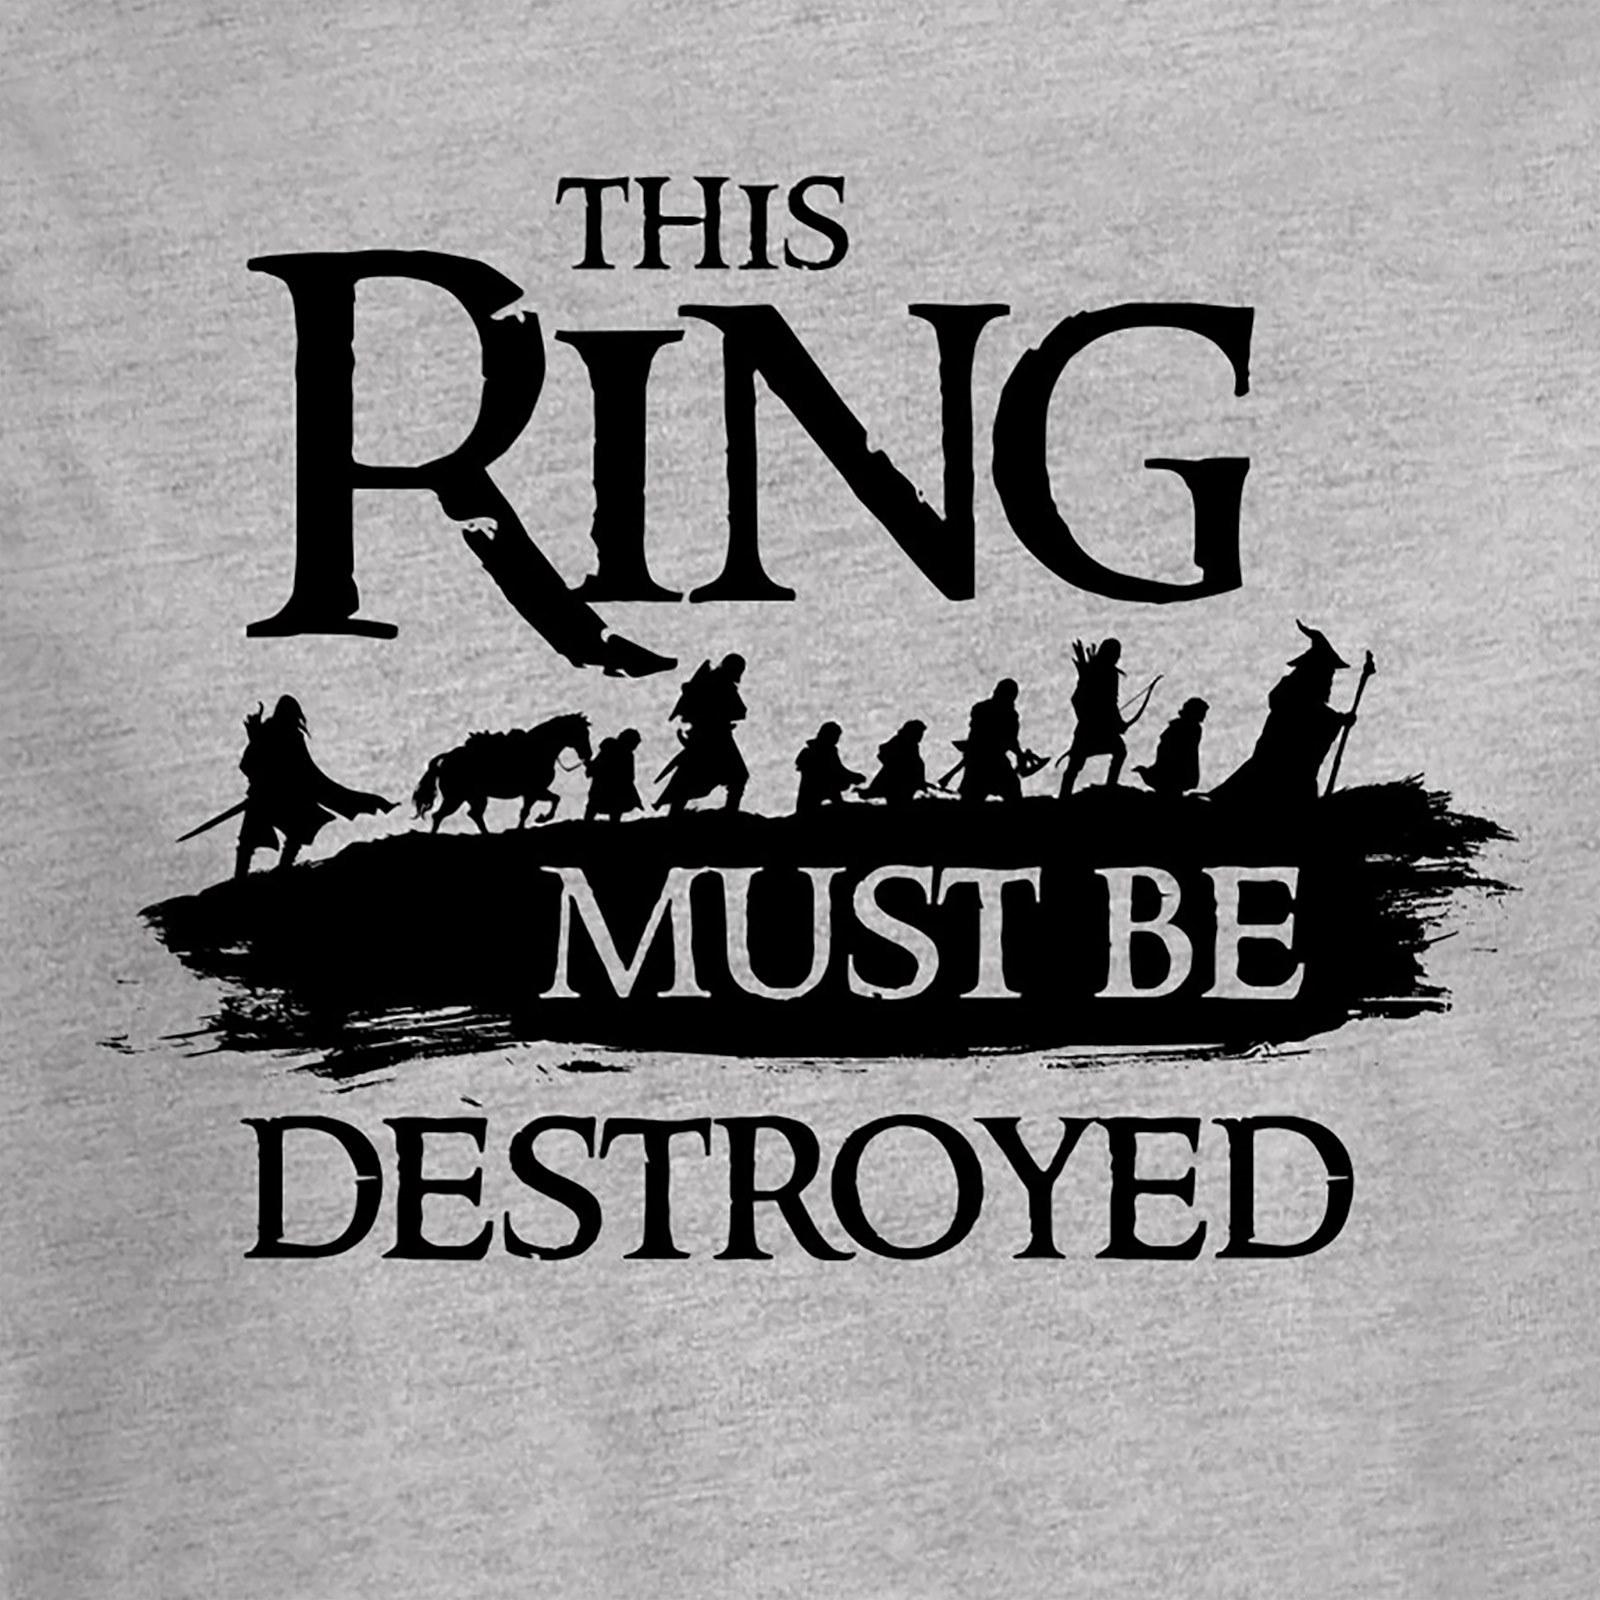 Heer der Ringen - Gezellen T-shirt grijs